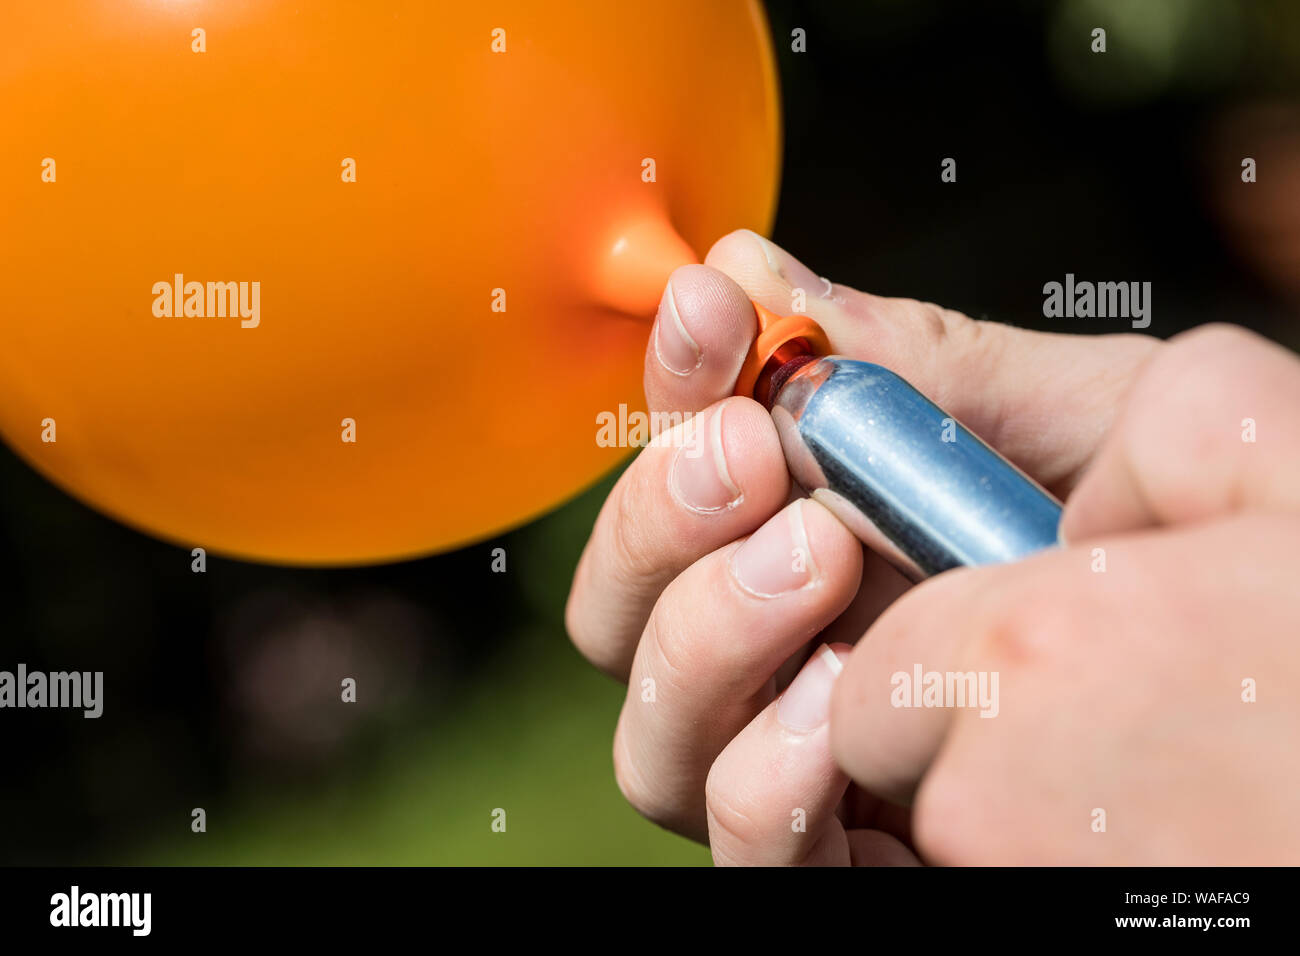 Un adolescent remplit un ballon avec de l'oxyde nitreux (gaz hilarant)  également connu sous le nom de crack hippy Photo Stock - Alamy